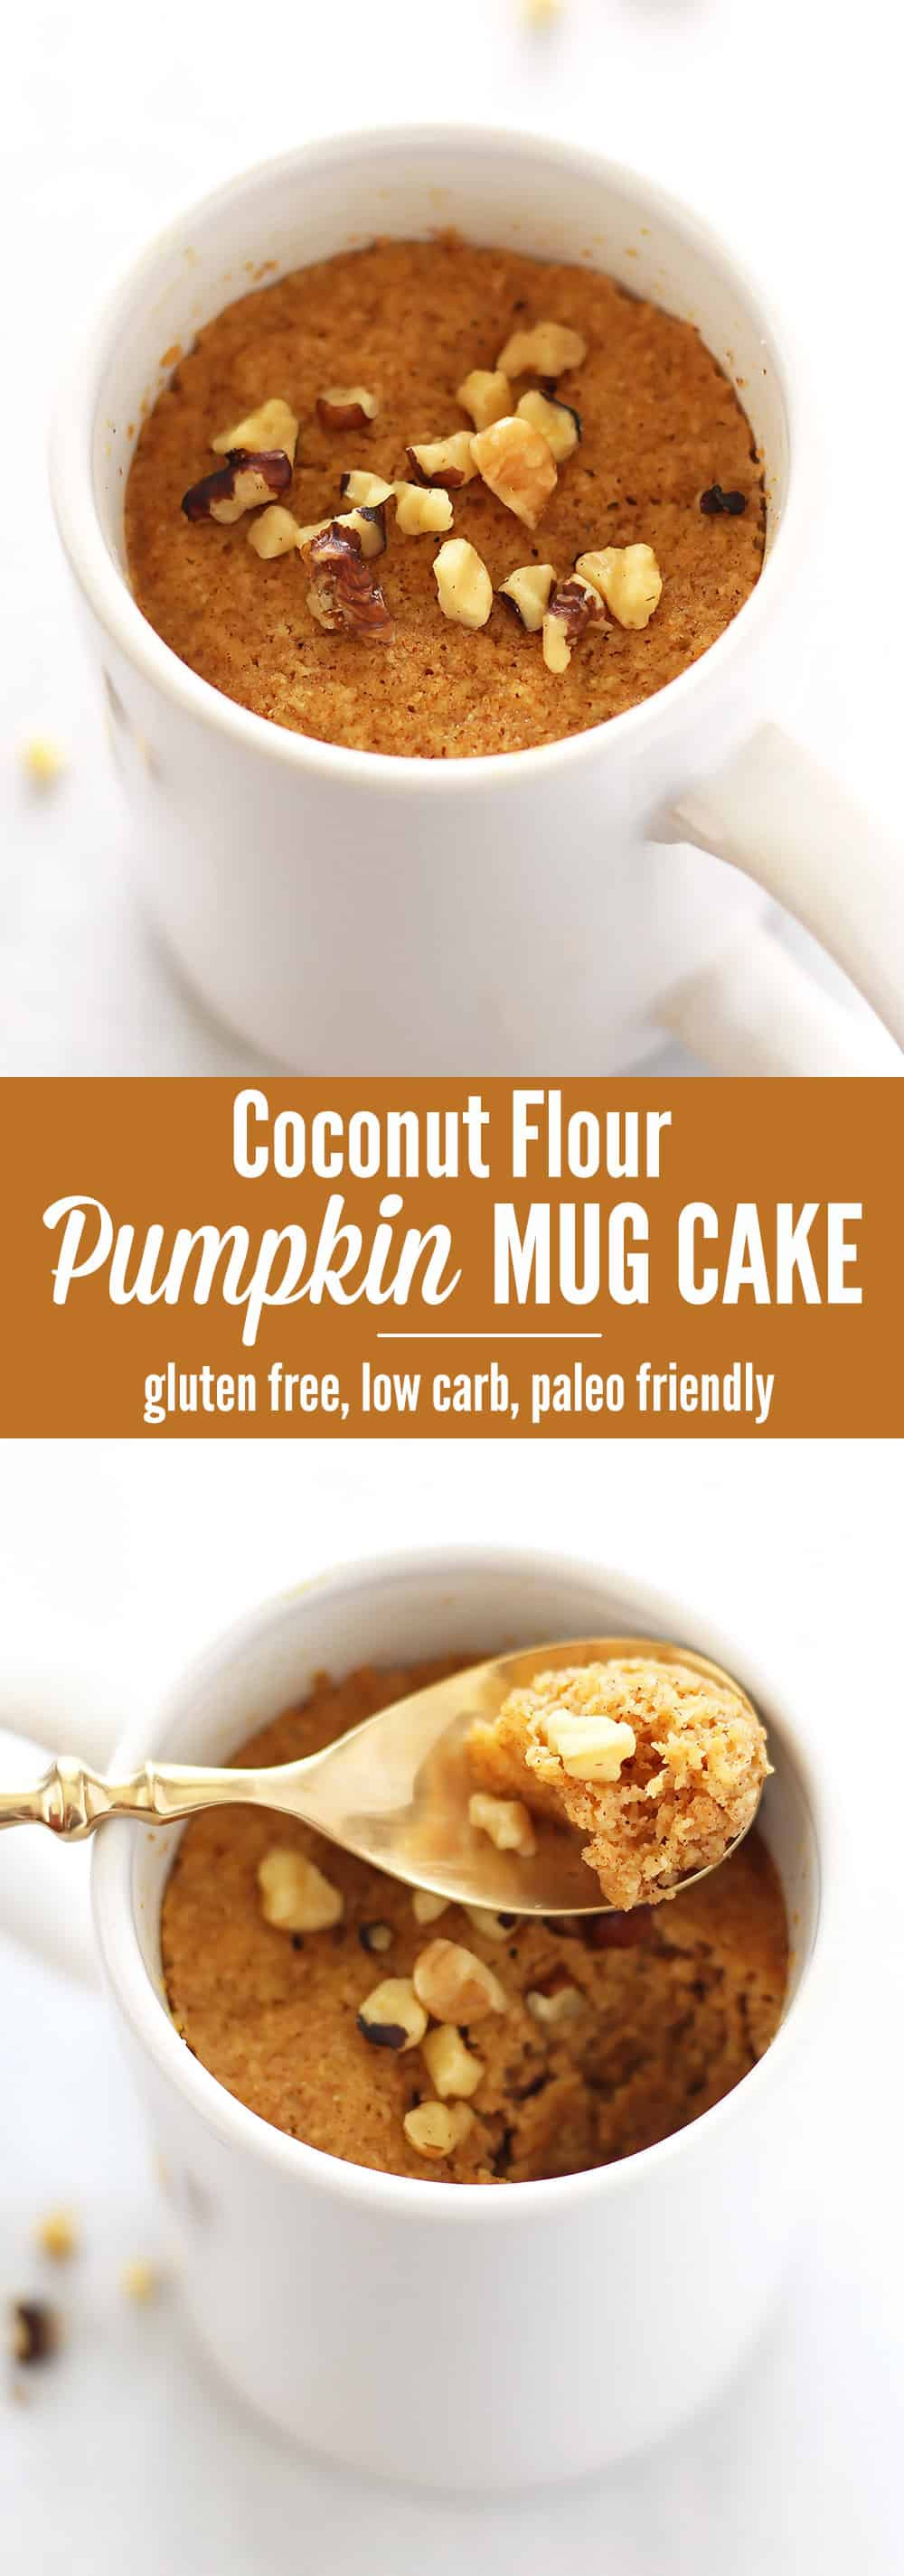 Low Carb Mug Cake Coconut Flour
 Paleo Pumpkin Mug Cake made with Coconut Flour Leelalicious